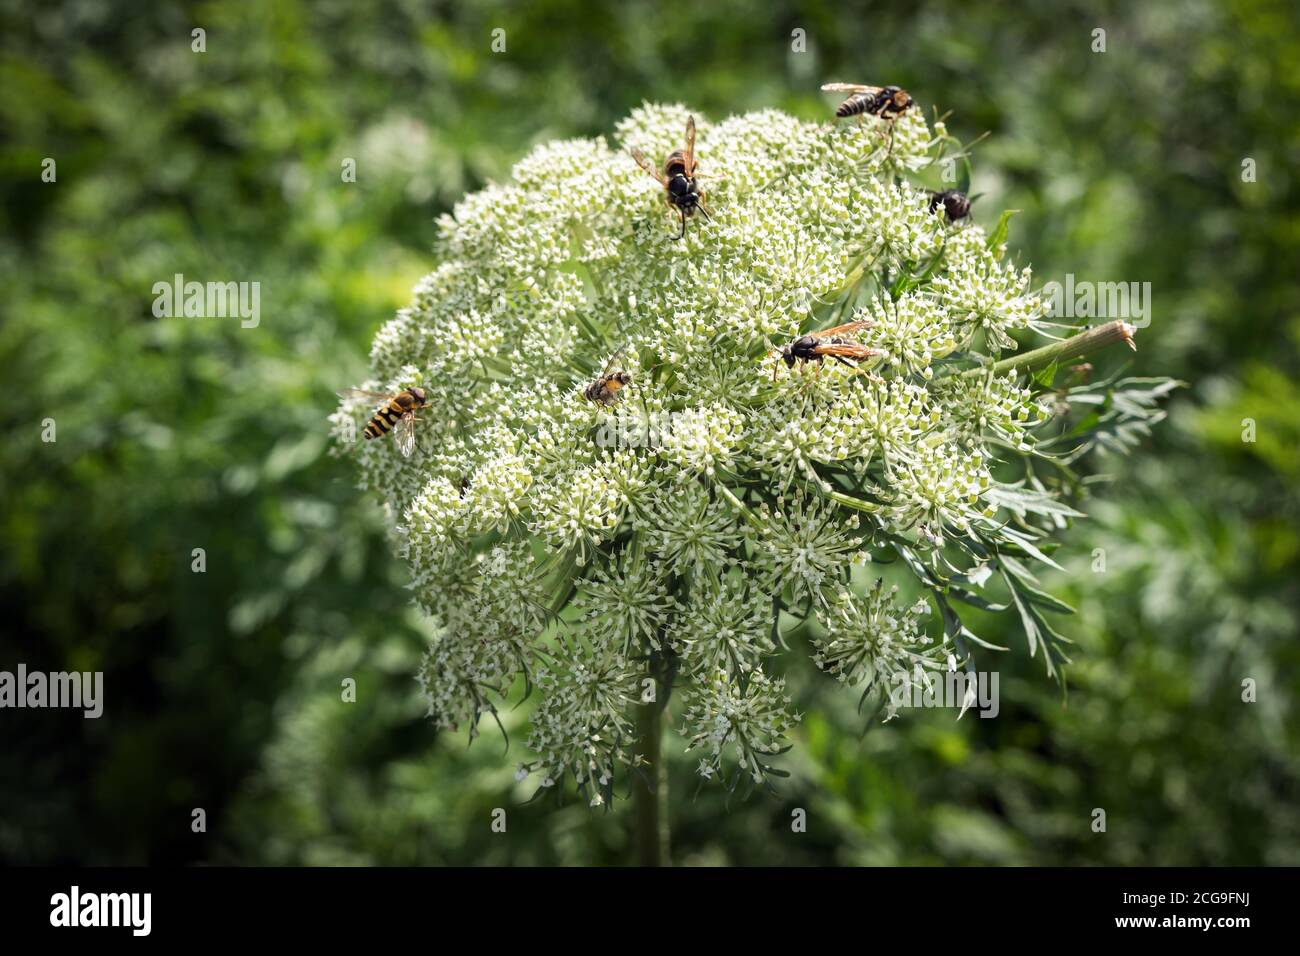 Wespen sammeln Nektar aus dem Samenaufblühen von Gemüsekarotten im Garten. Stockfoto